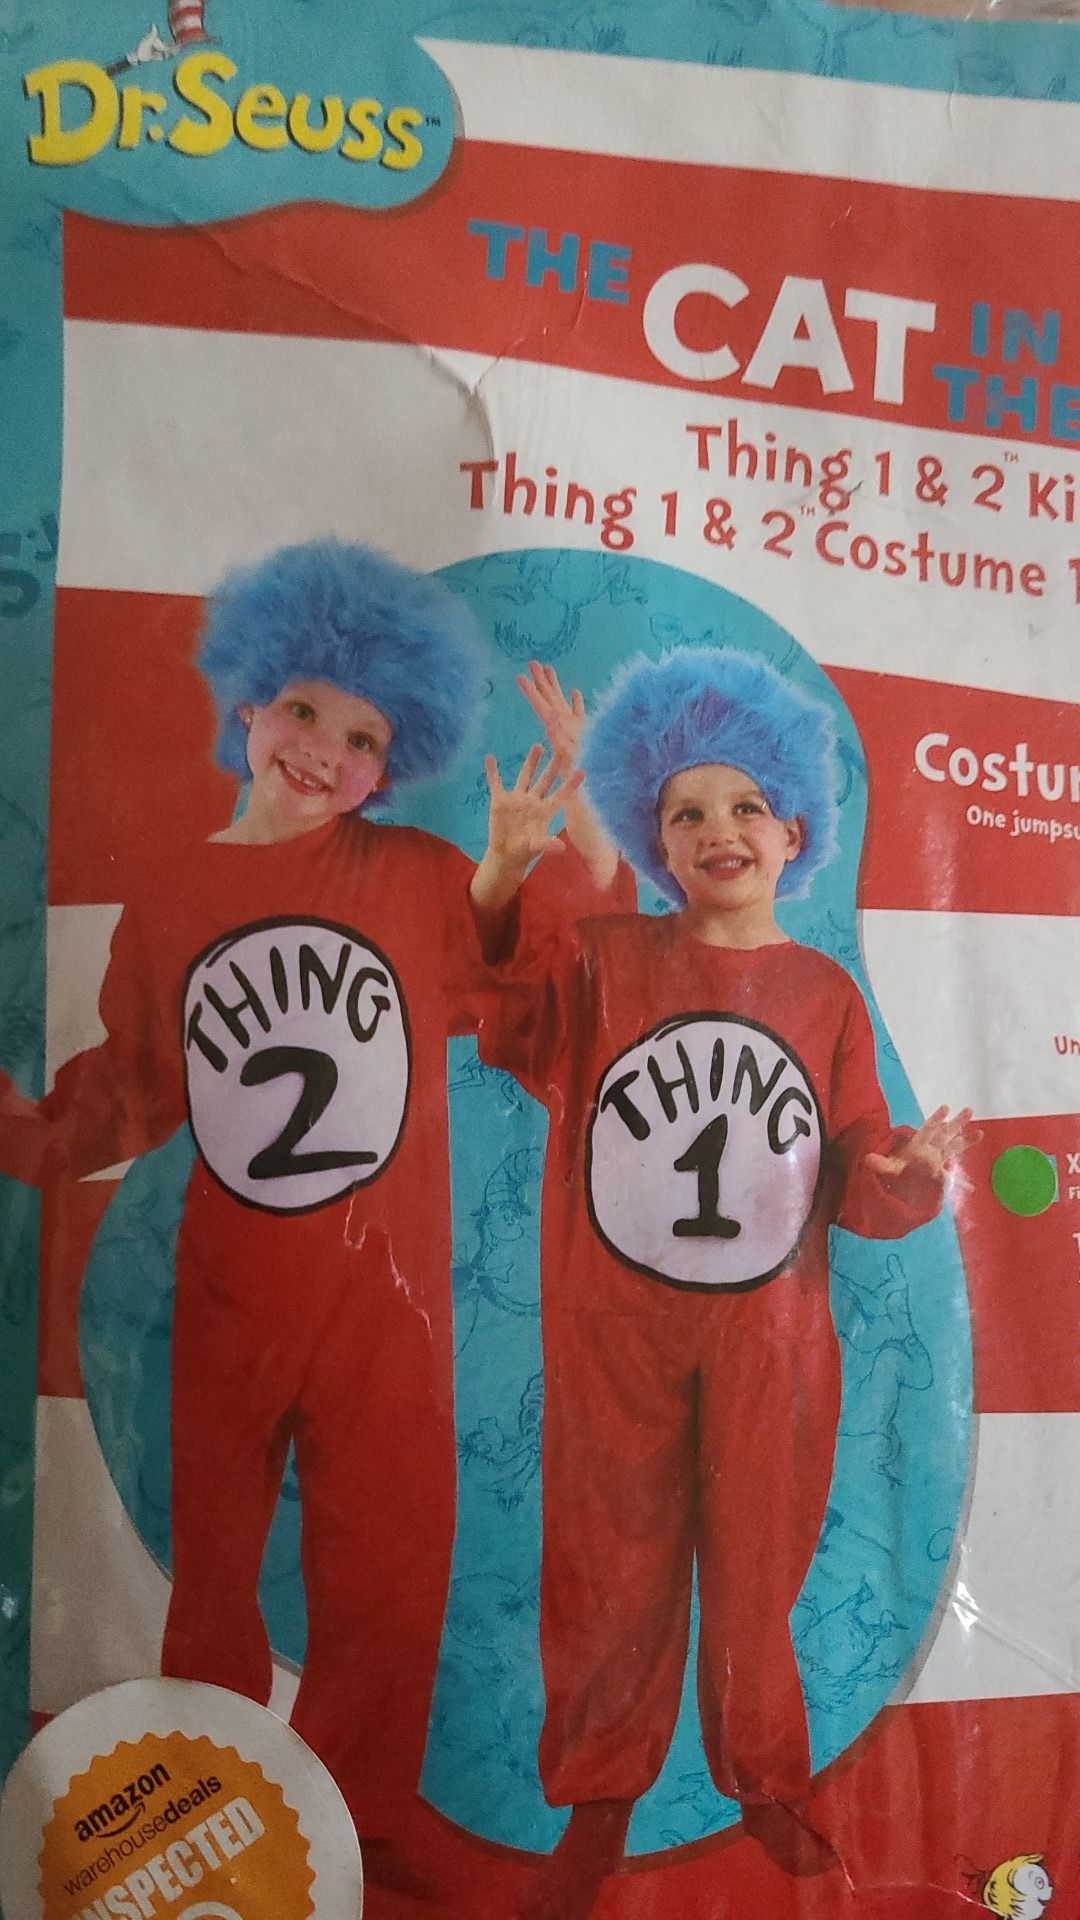 Thing 1 costume kids